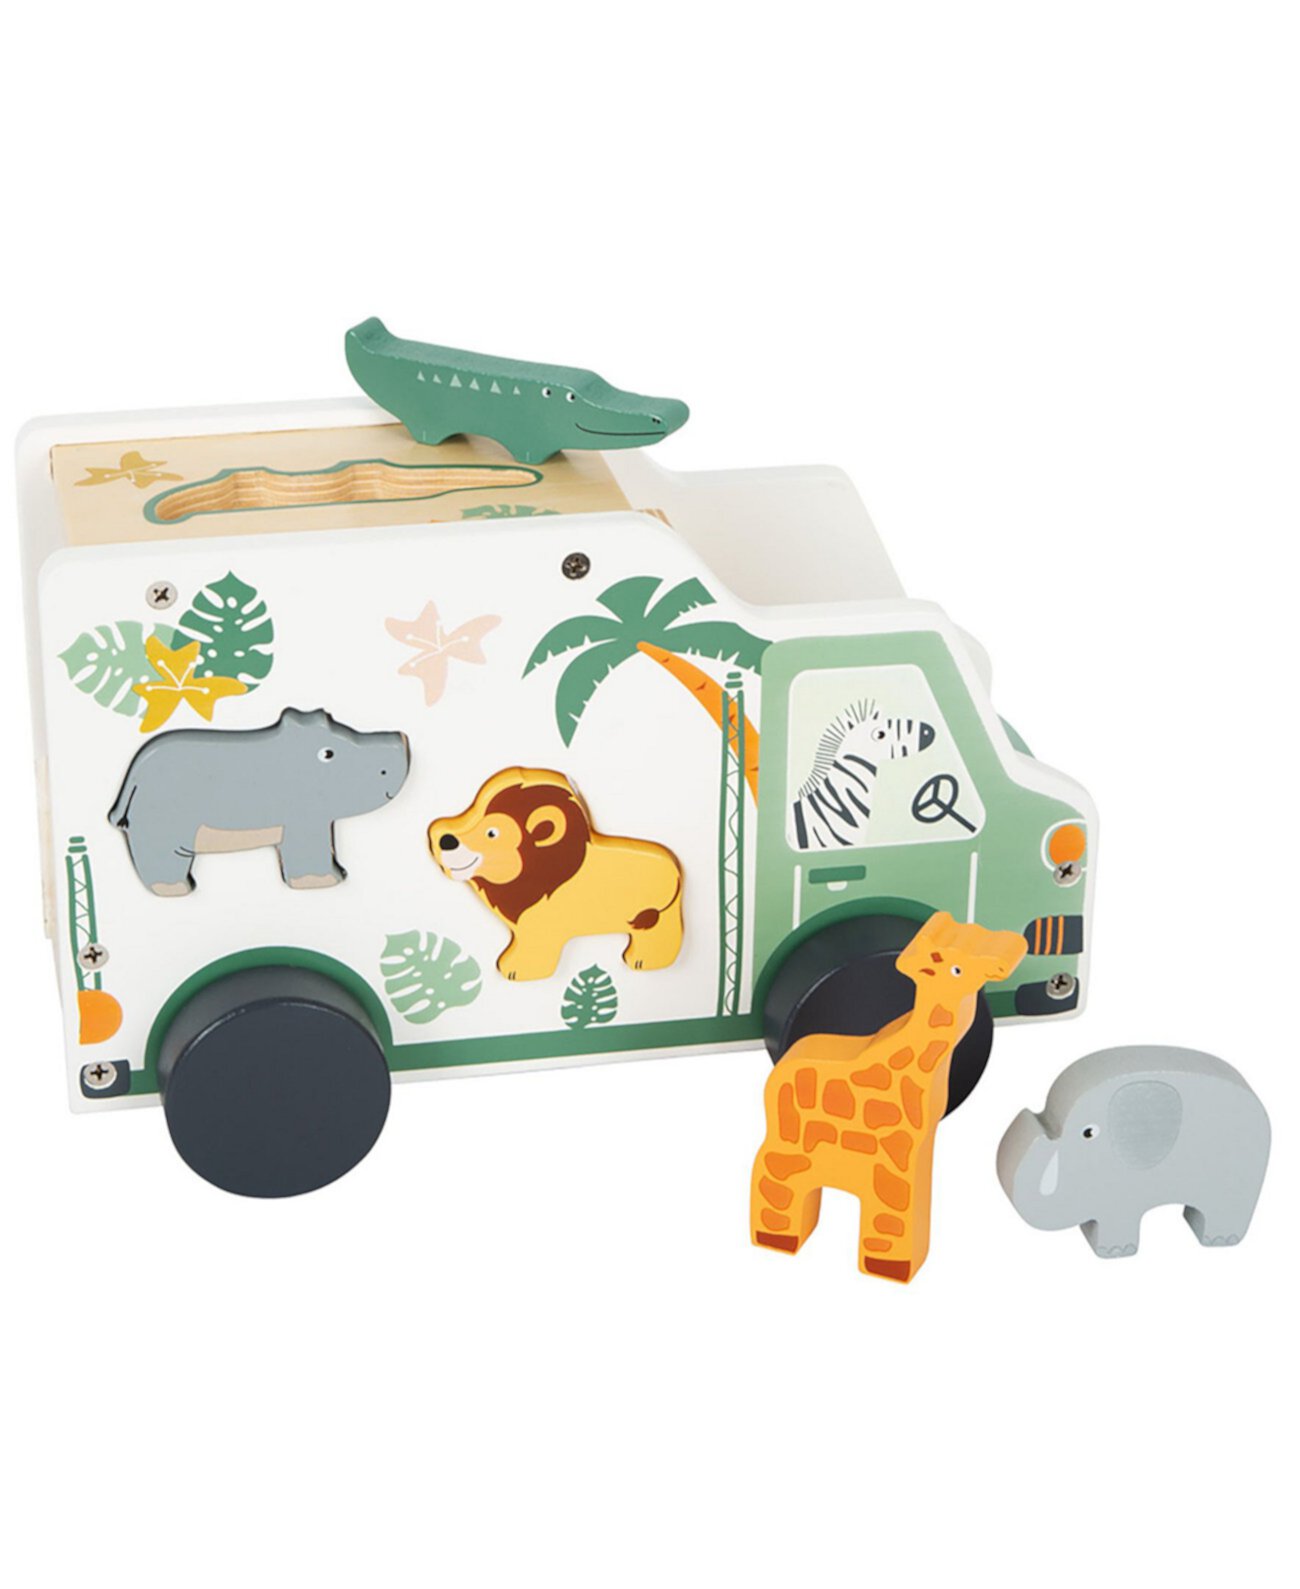 Маленькие деревянные игрушки для сафари, грузовик, сортировщик форм, игровой набор для животных, 6 предметов Flat River Group